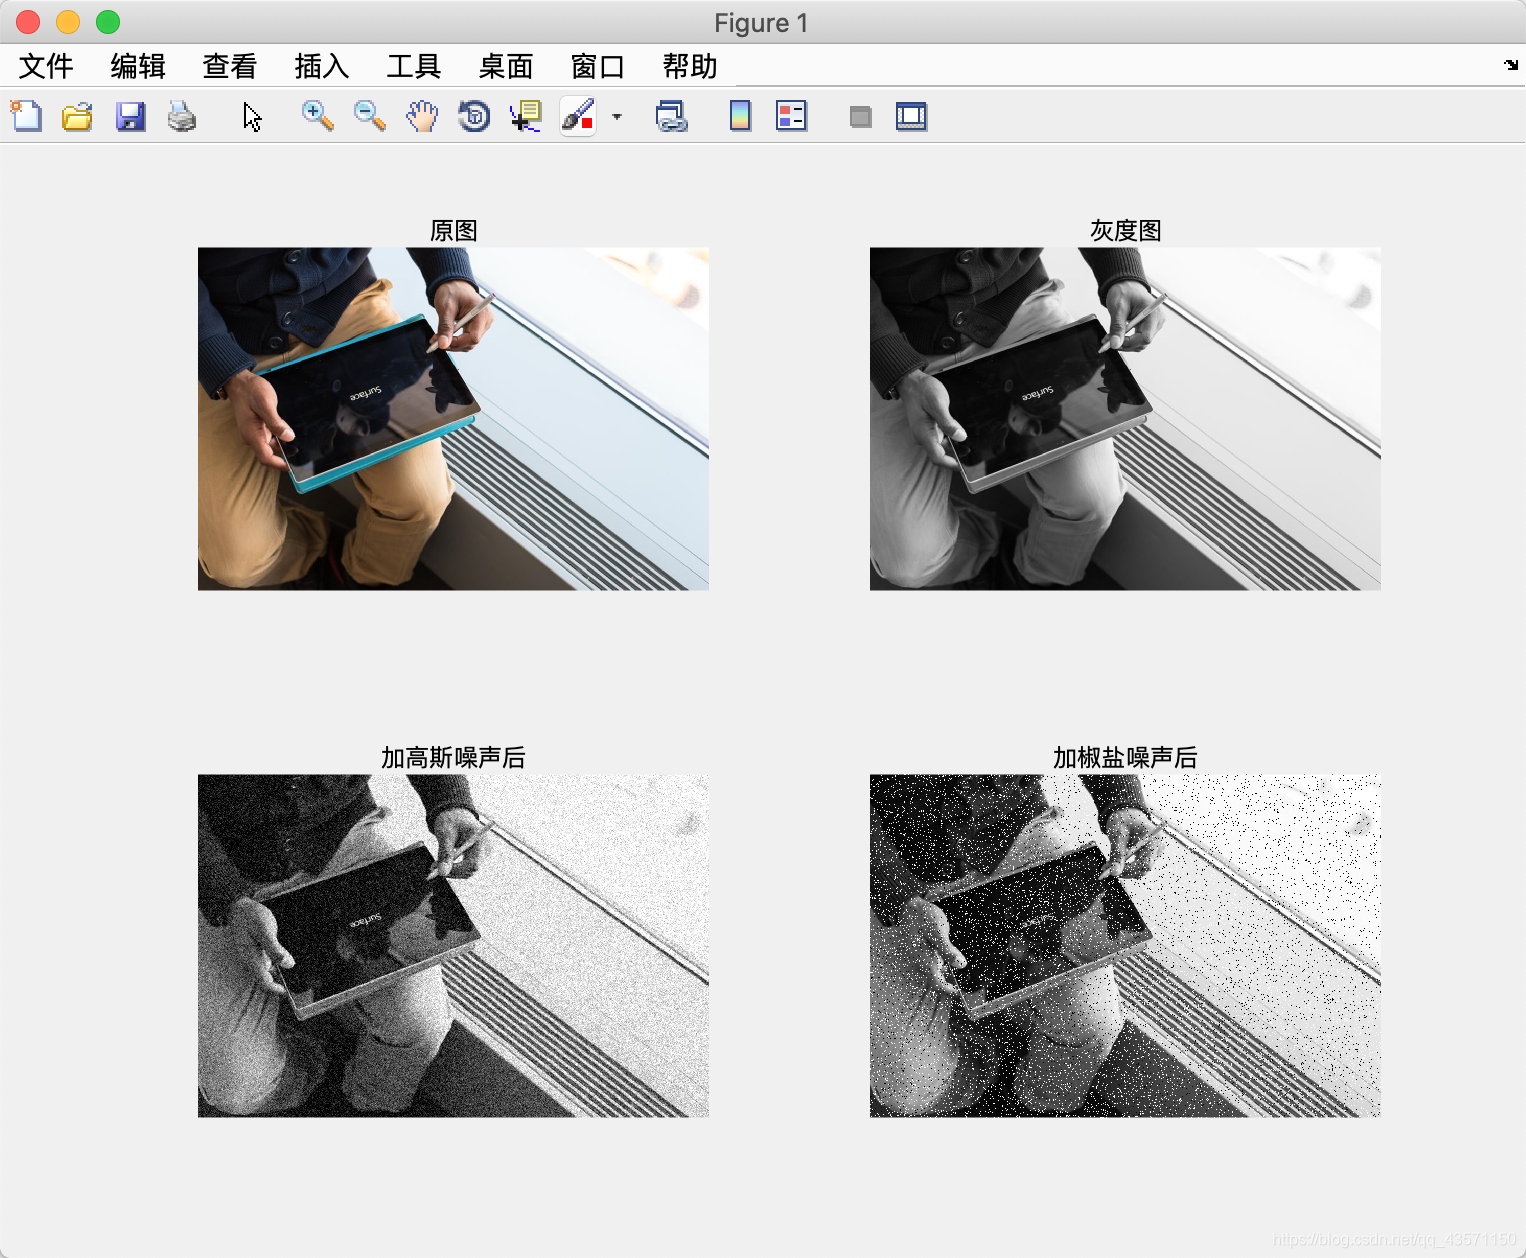 数字图像处理python实现-图像增强篇_运用数字增强技术处理自己的照片python-CSDN博客